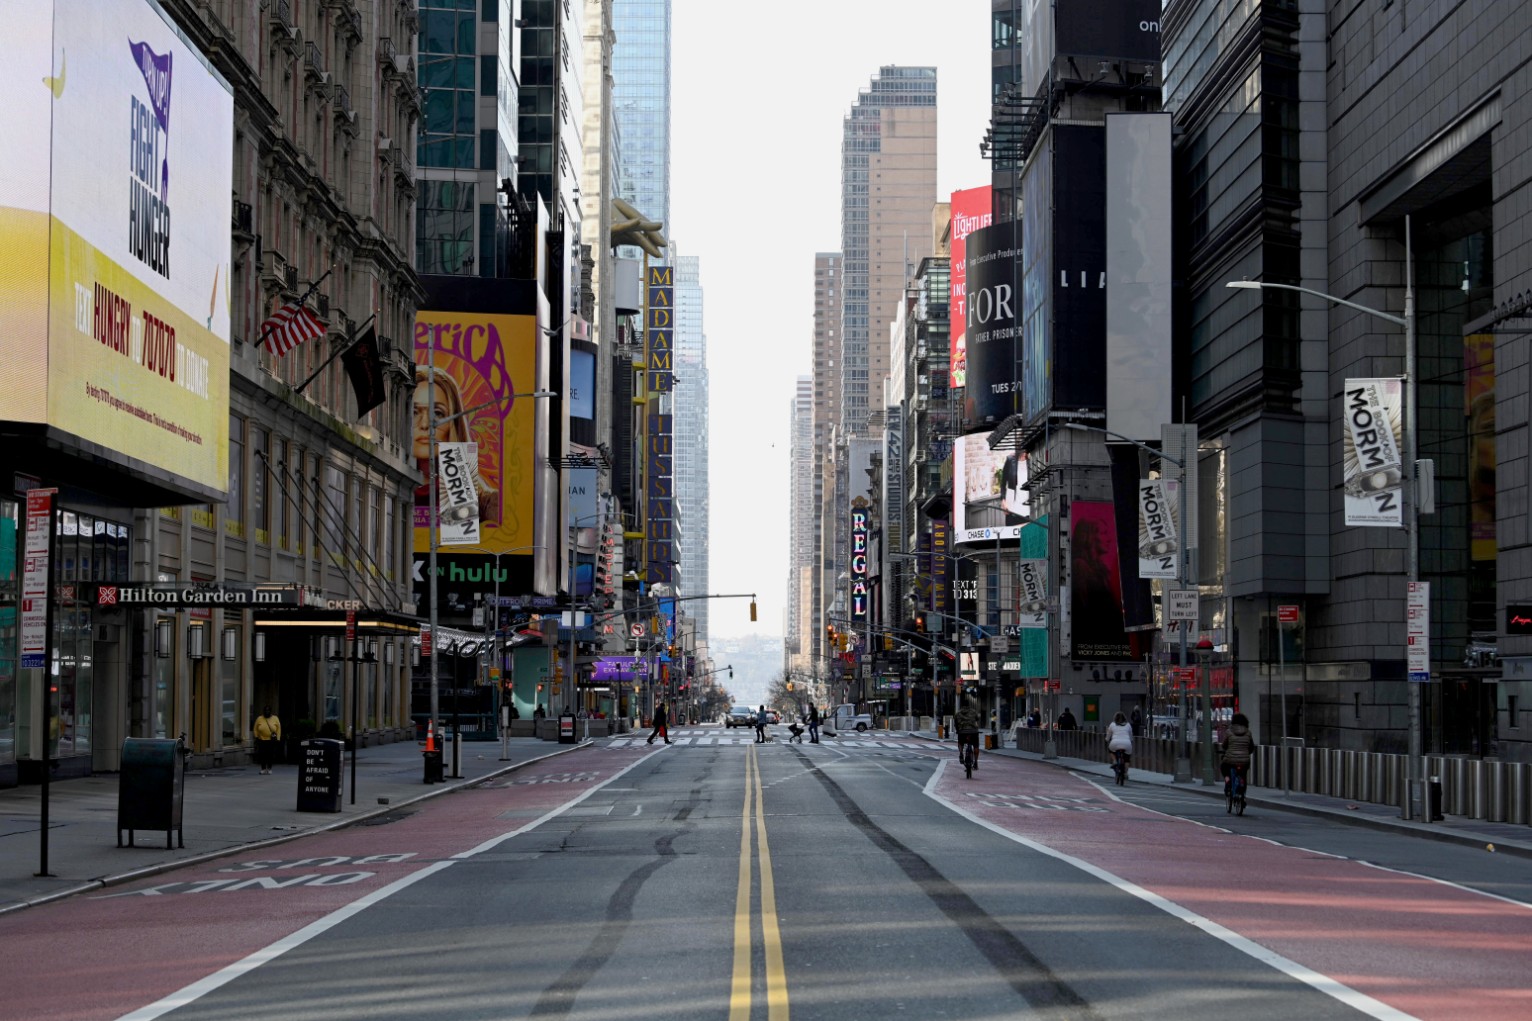 Cities are closing. Тайм сквер в Нью-Йорке фото. Нью-Йорк улица Таймс сквер тротуар. Таймс сквер пустой. Таймс сквер Пандемия 2020.